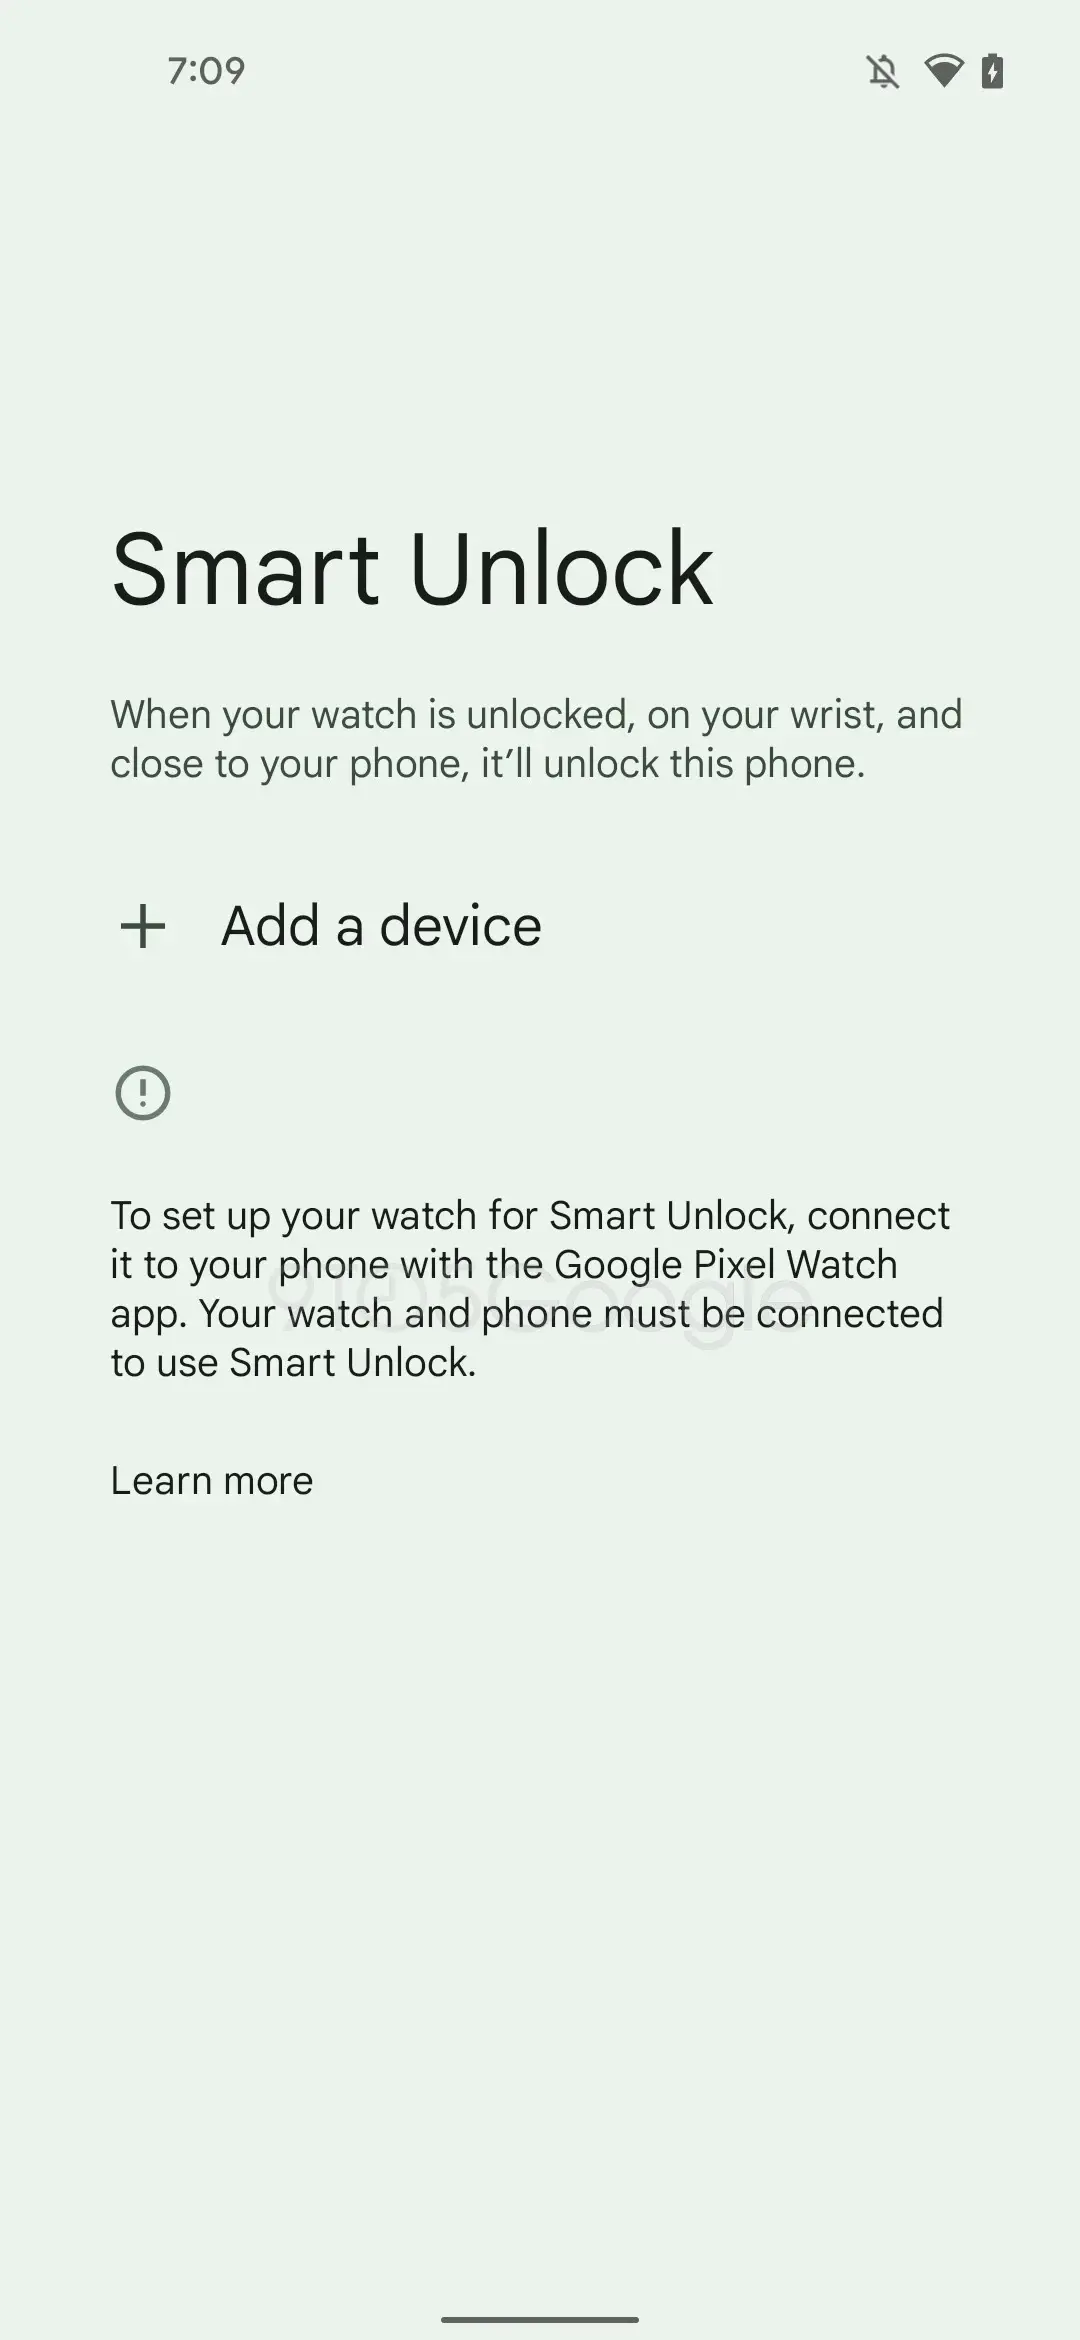 Immagine da 9to5Google - Una nuova perdita suggerisce che probabilmente dovrai installare un'app separata per il tuo Pixel Watch